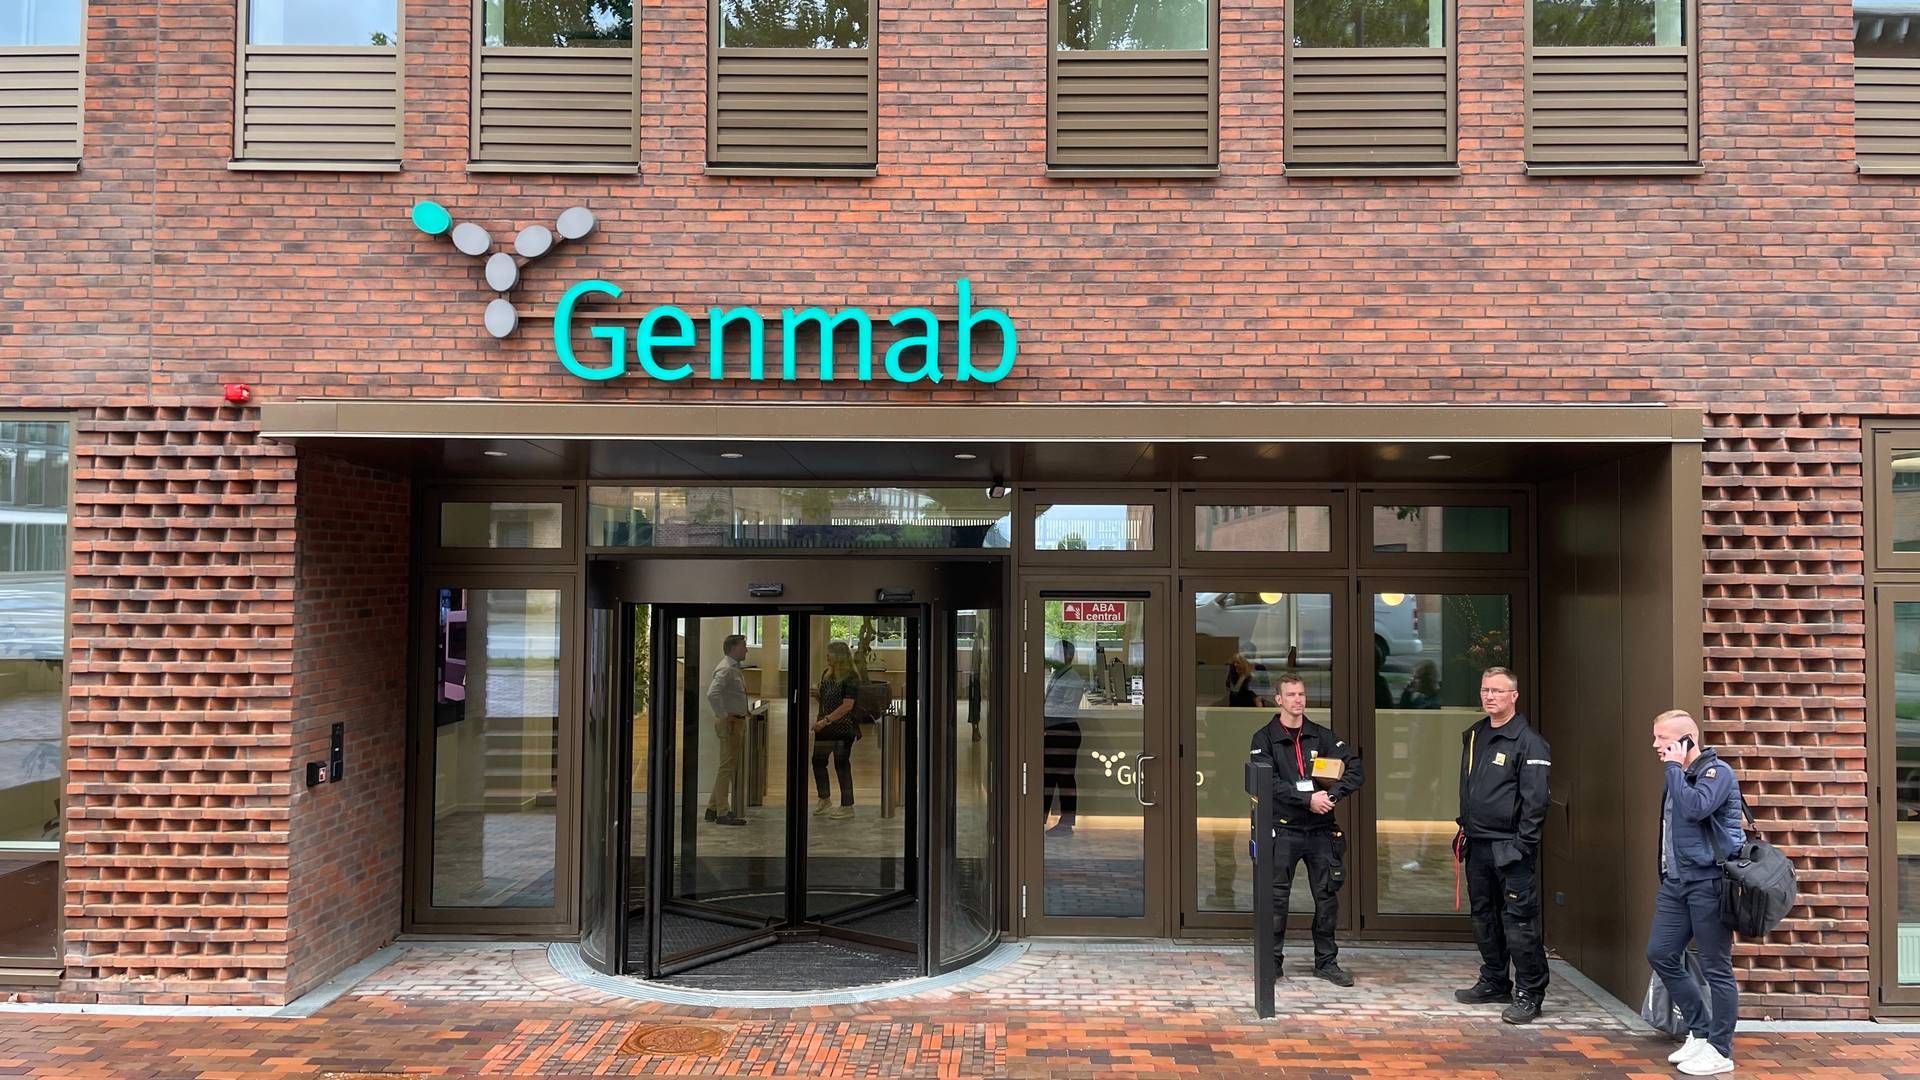 Genmab's headquarters in Copenhagen. | Photo: Medwatch/photo by Ulrich Quistgaard